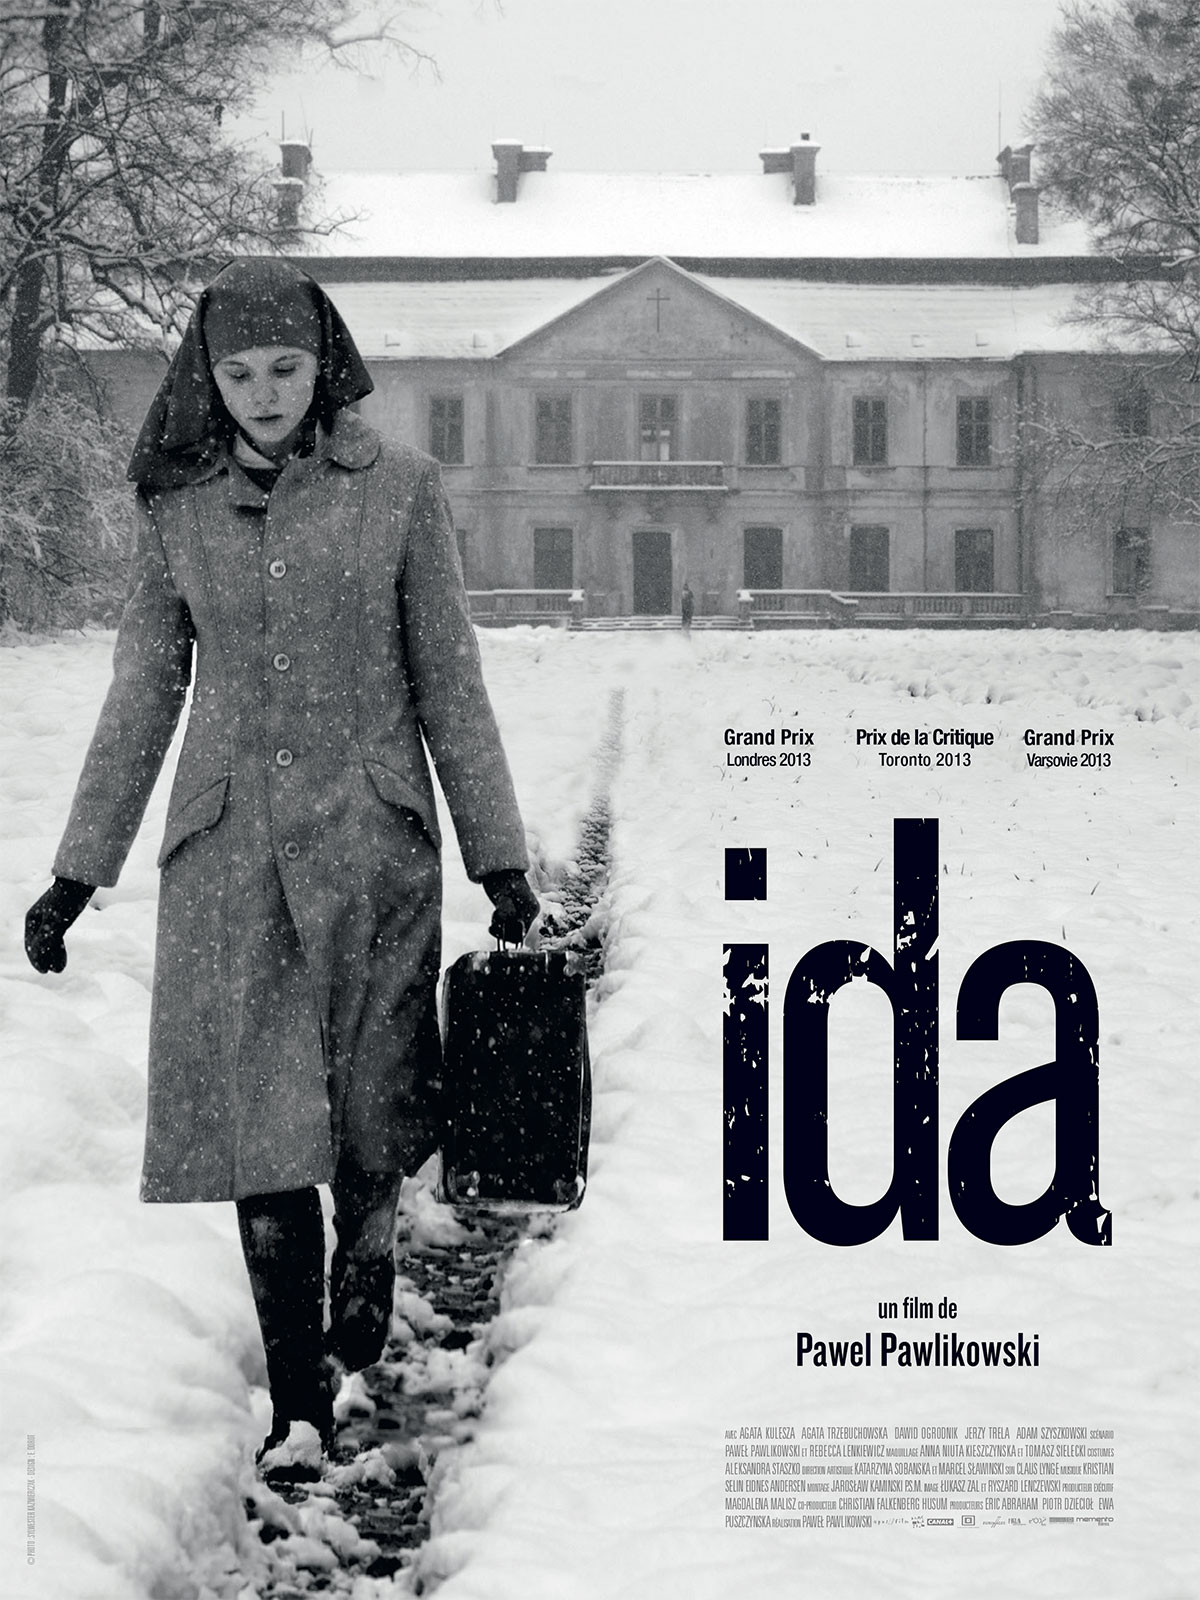 53- Ida (Pawel Pawlikowski, 2013)